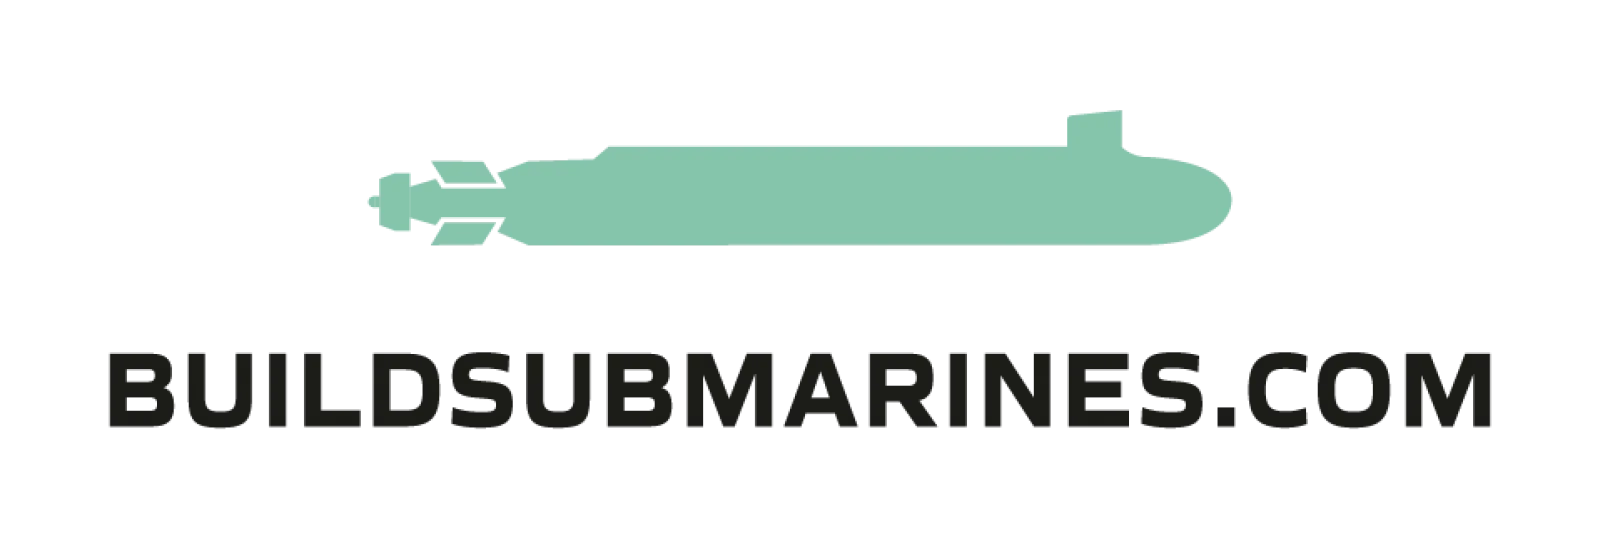 Build submarines